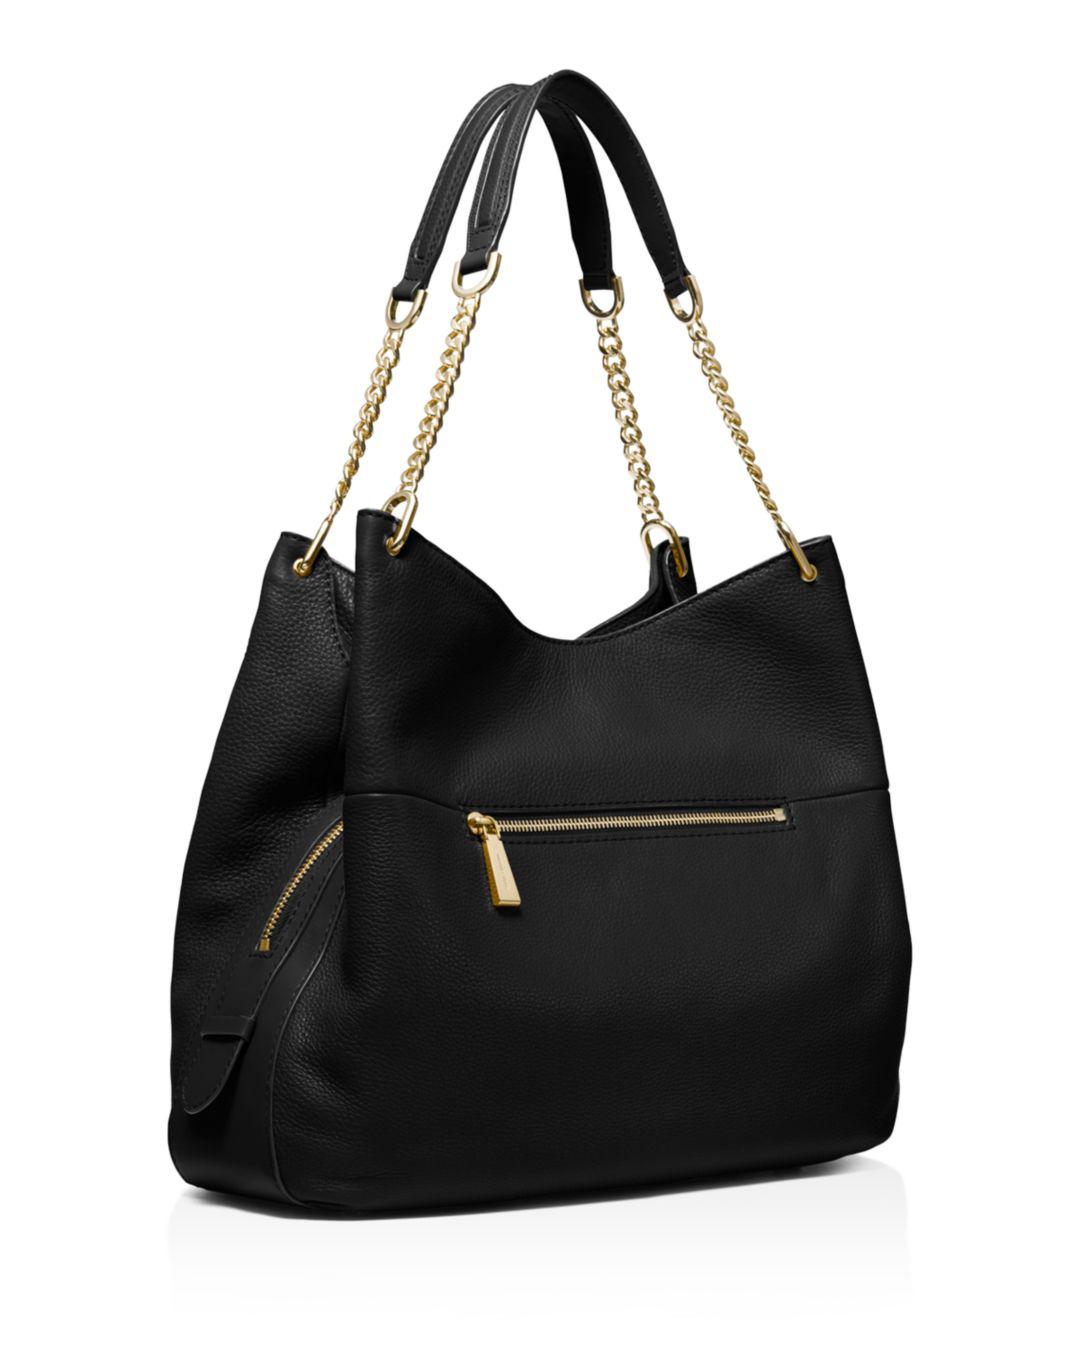 Michael Kors Synthetic Lillie Large Pebbled Leather Shoulder Bag in Black/Gold (Black) - Lyst